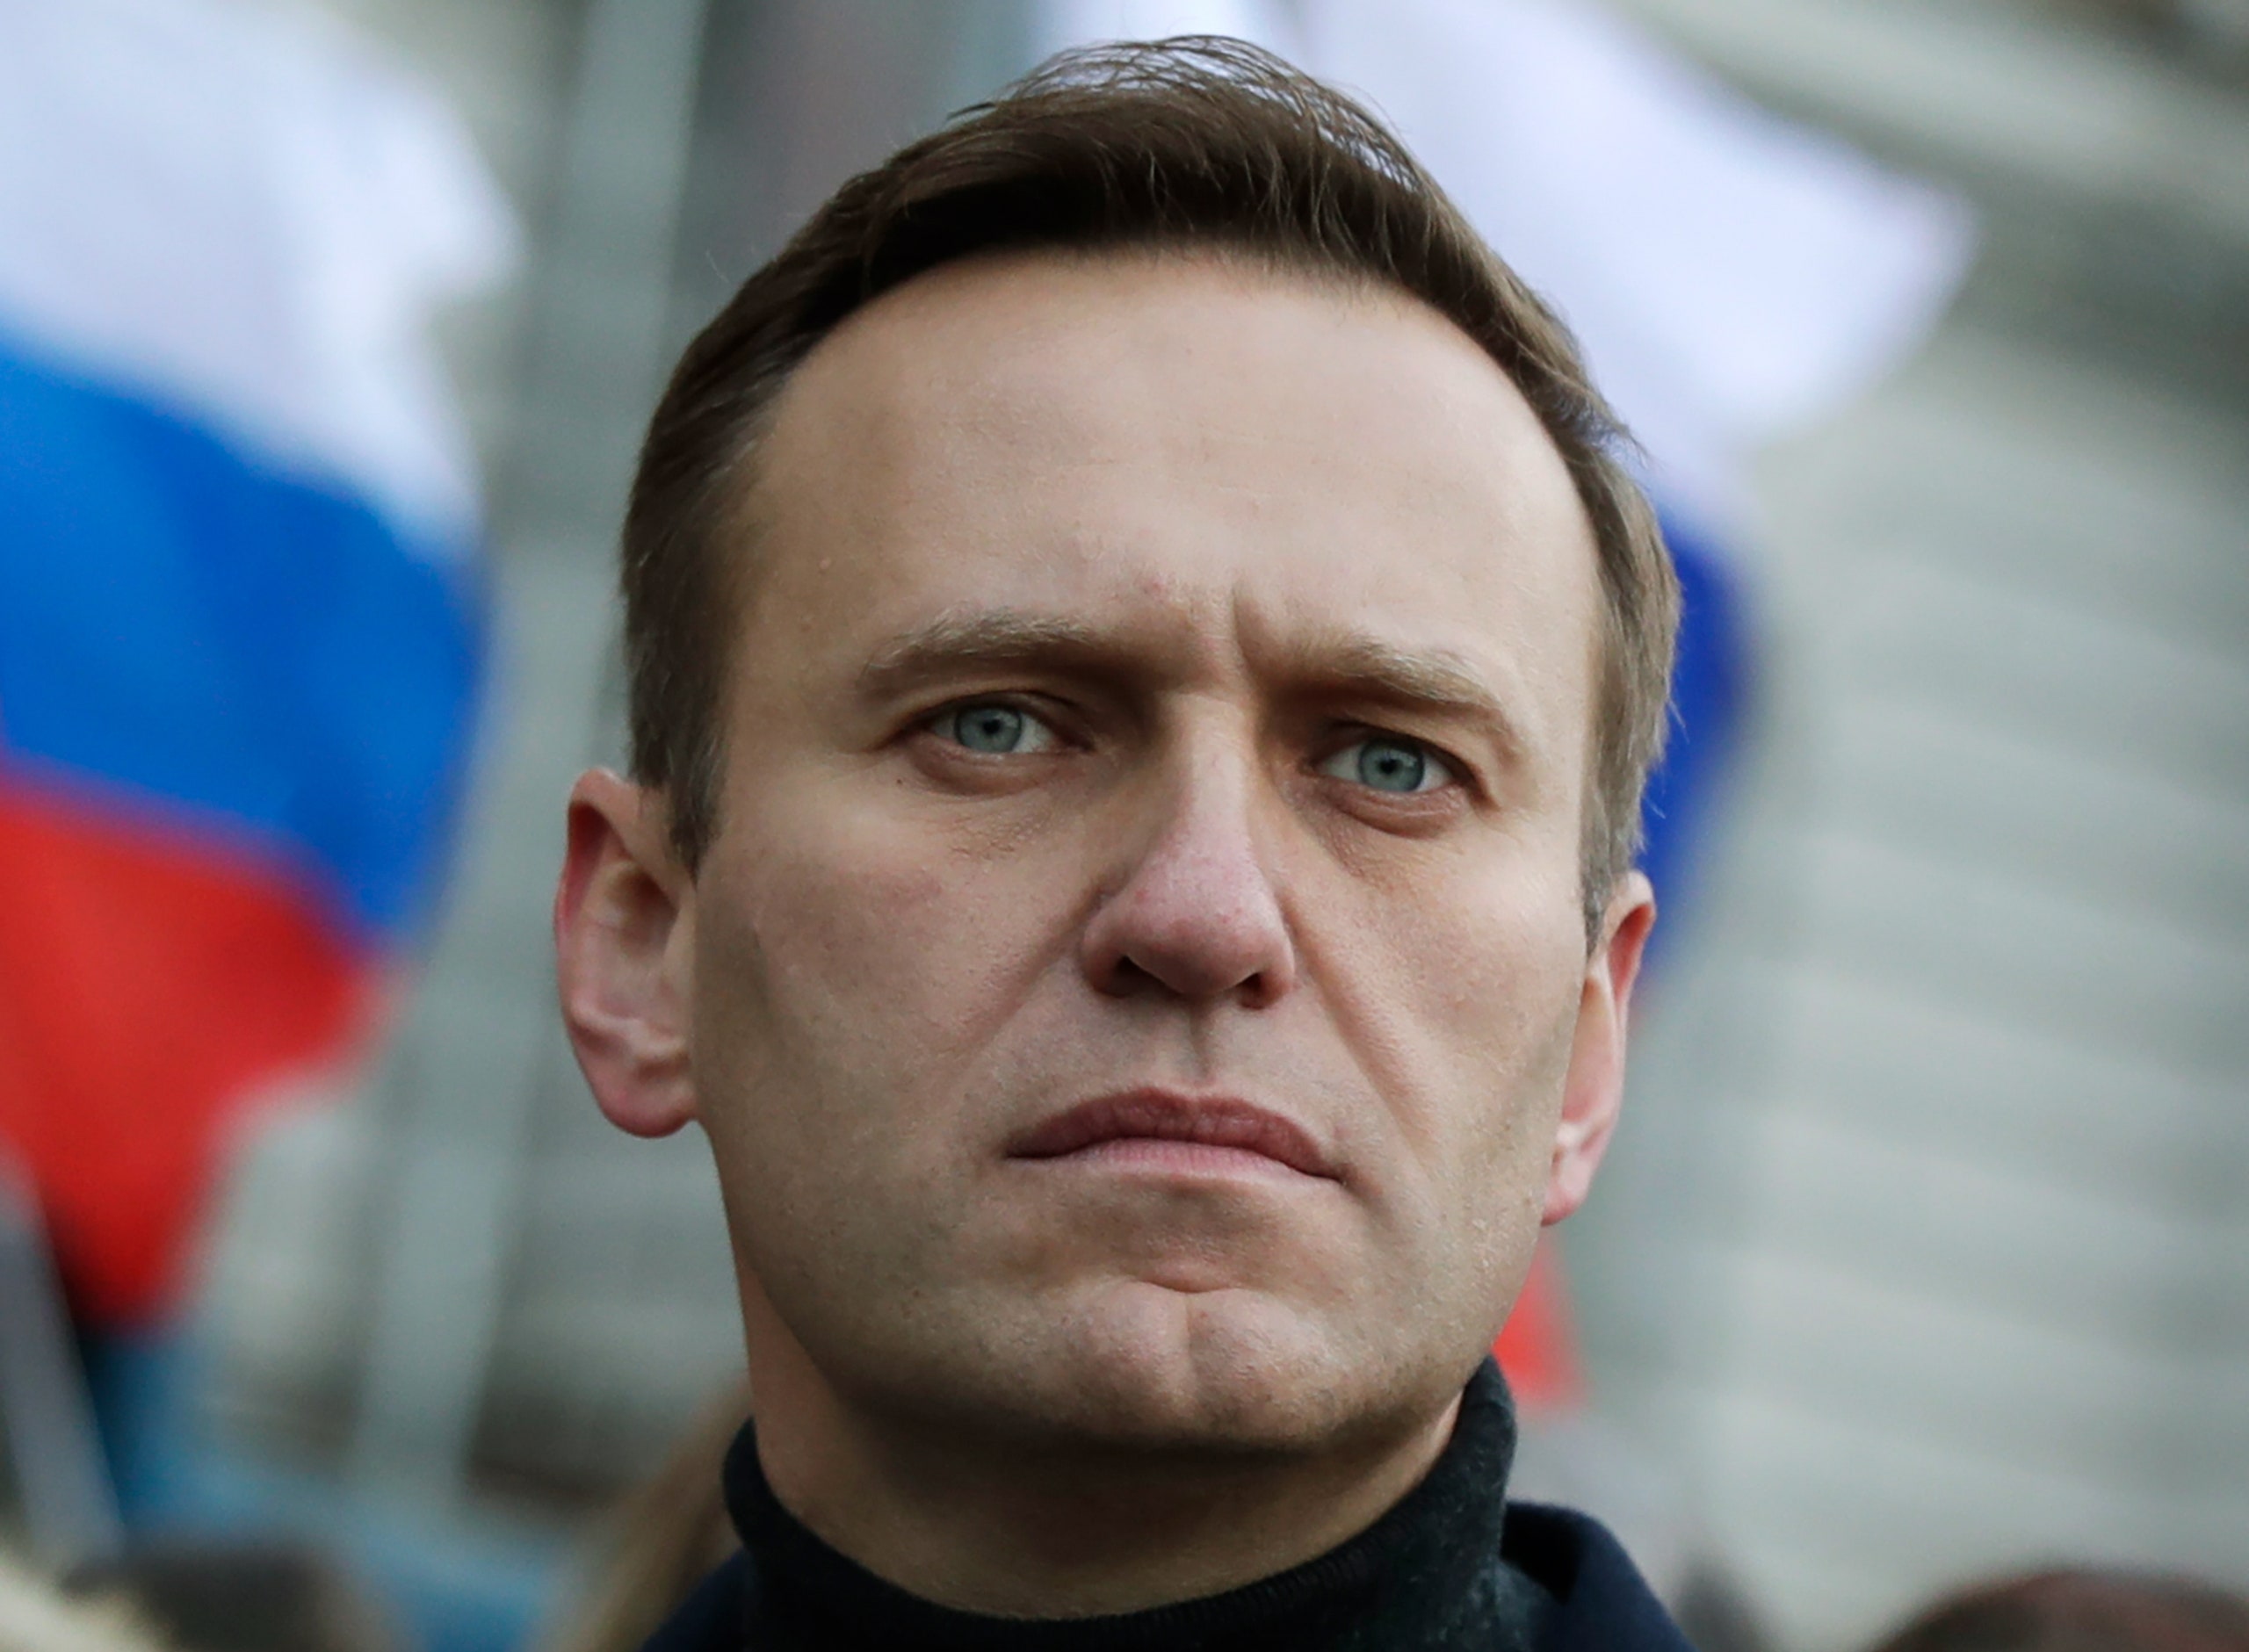 Πούτιν για επίθεση στον Ναβάλνι: Ποινική δίωξη για την υπόθεση δεν μπορεί προς το παρόν να ασκηθεί